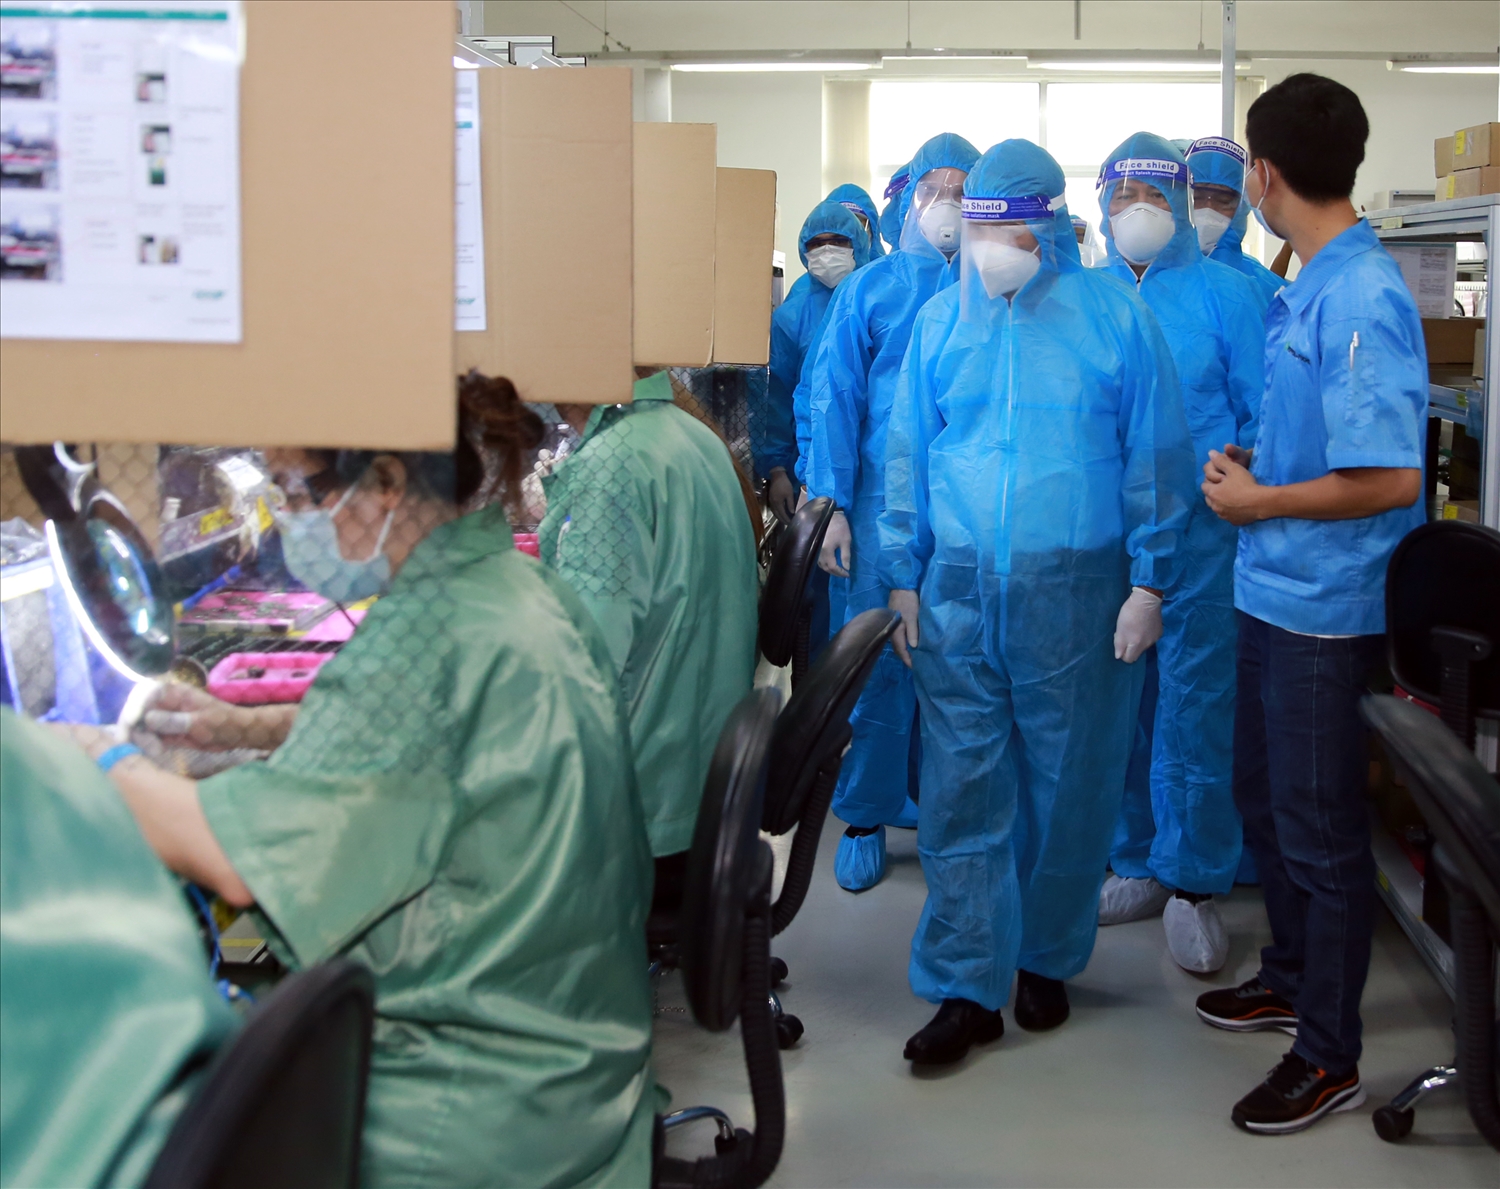 Phó Thủ tướng Lê Văn Thành kiểm tra tình hình sản xuất của Công ty Pepperl+Fuchs tại Khu chế xuất Tân Thuận. Ảnh VGP/Đức Tuân